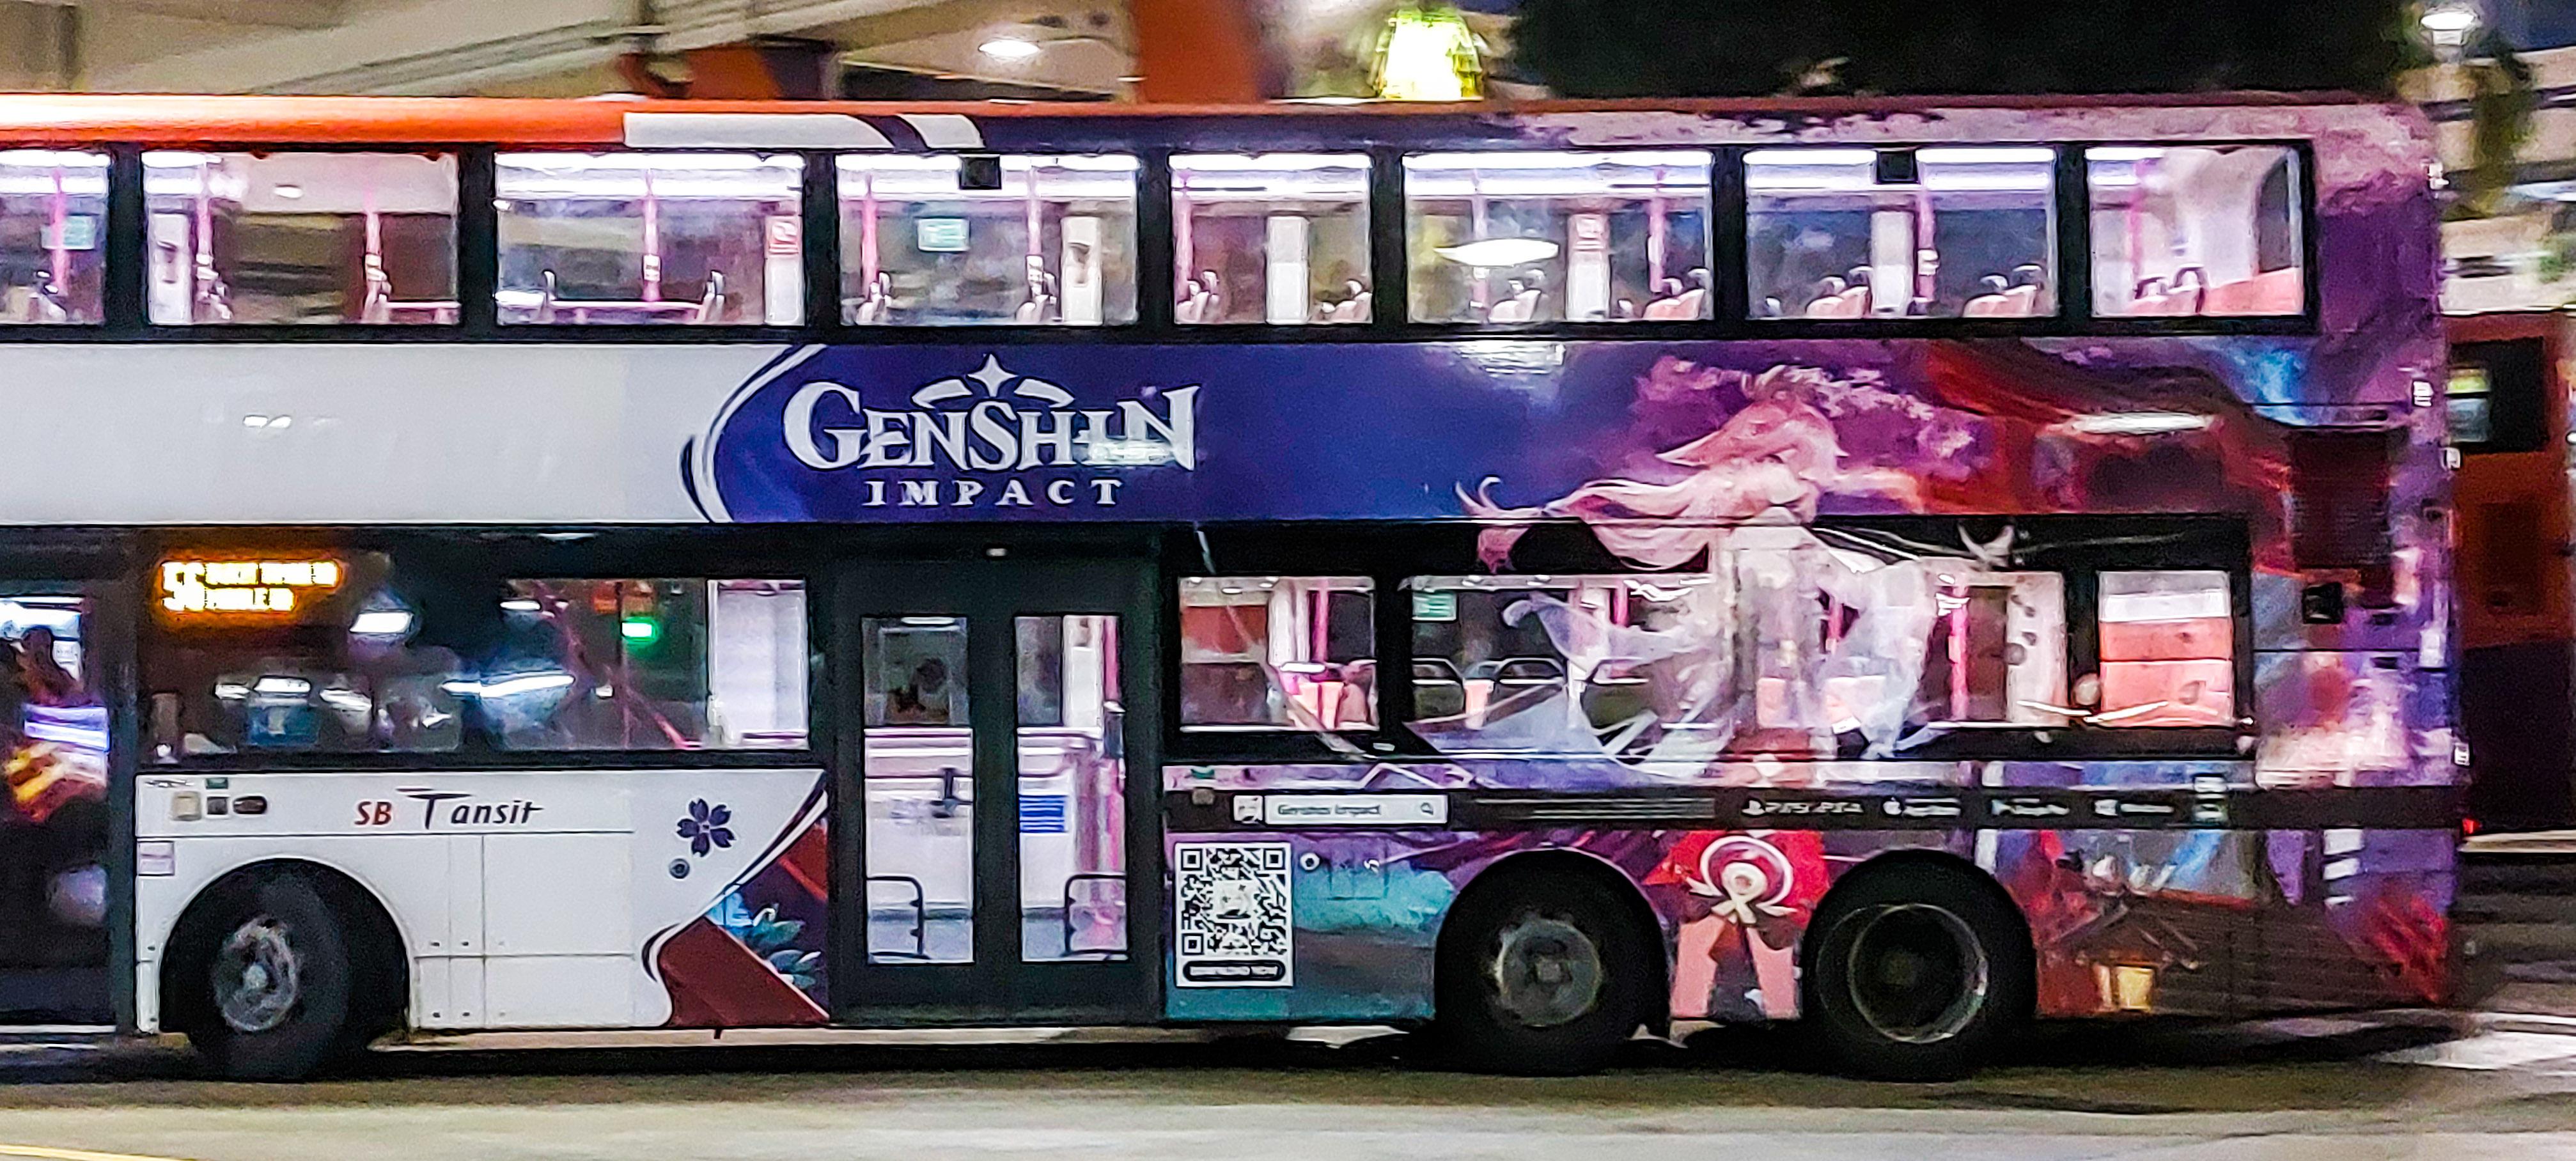 Genshin Impact bus